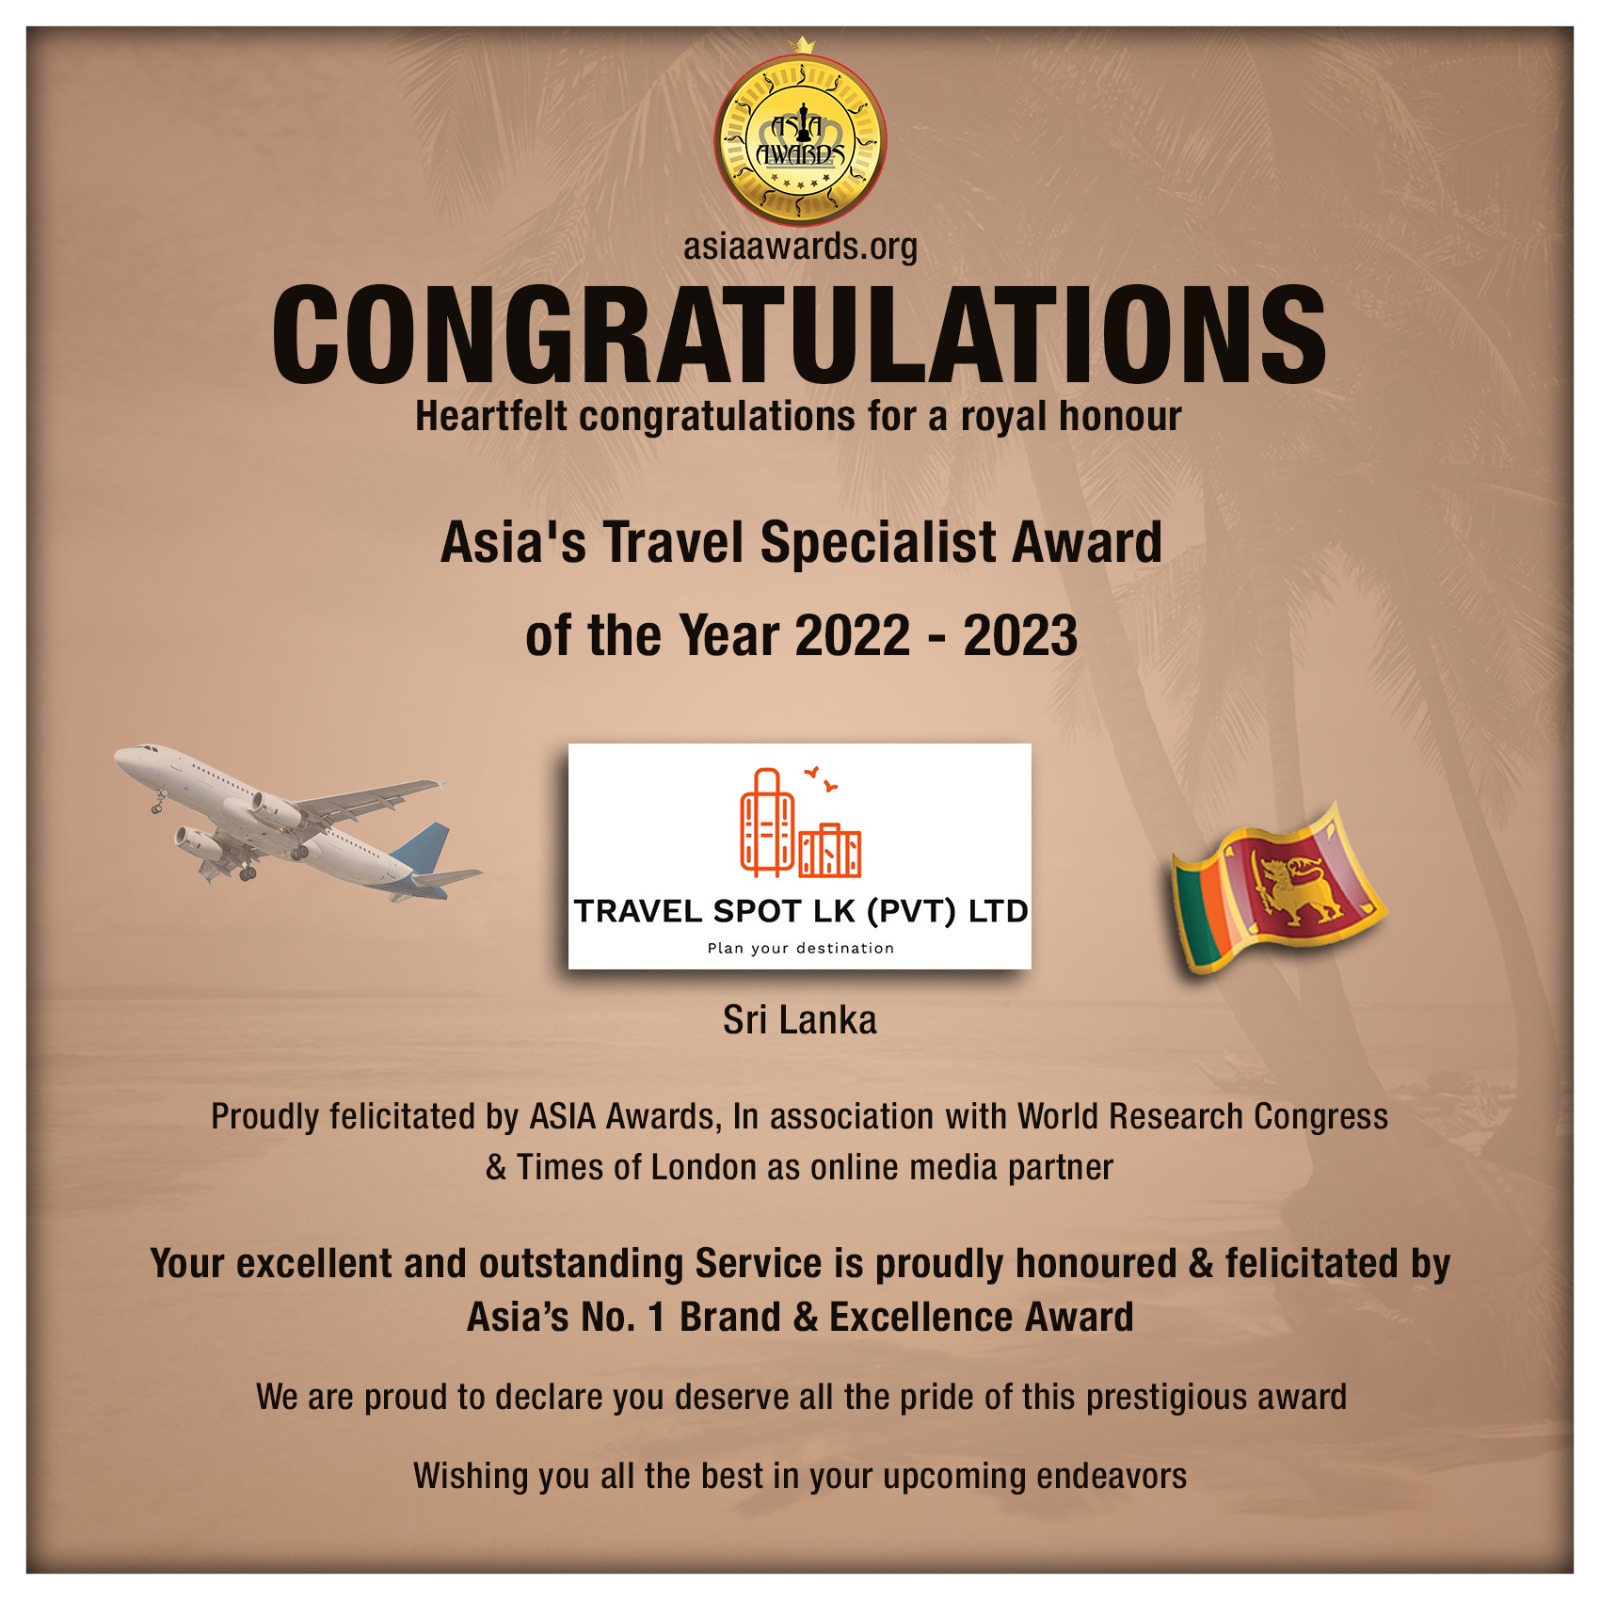 Travel Spot LK Pvt Ltd Has bagged Asia's Travel Specialist Award